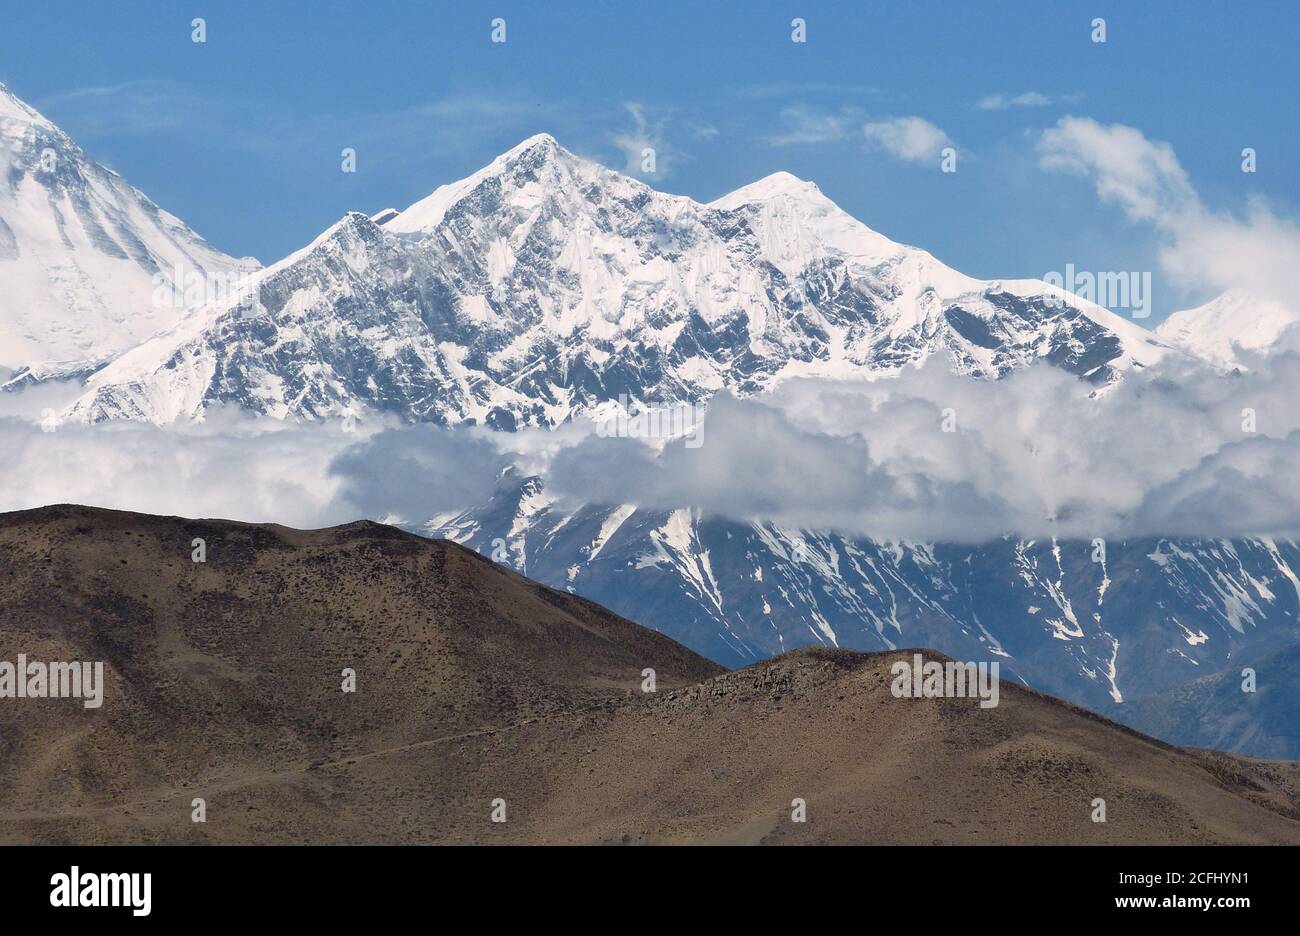 Montagnes majestueuses de l'Himalaya, quartier de Mustang, Népal. Vallée de Muktinath. Royaume Lo. Sommets enneigés de l'Himalaya. Paysage de montagne pittoresque. Banque D'Images